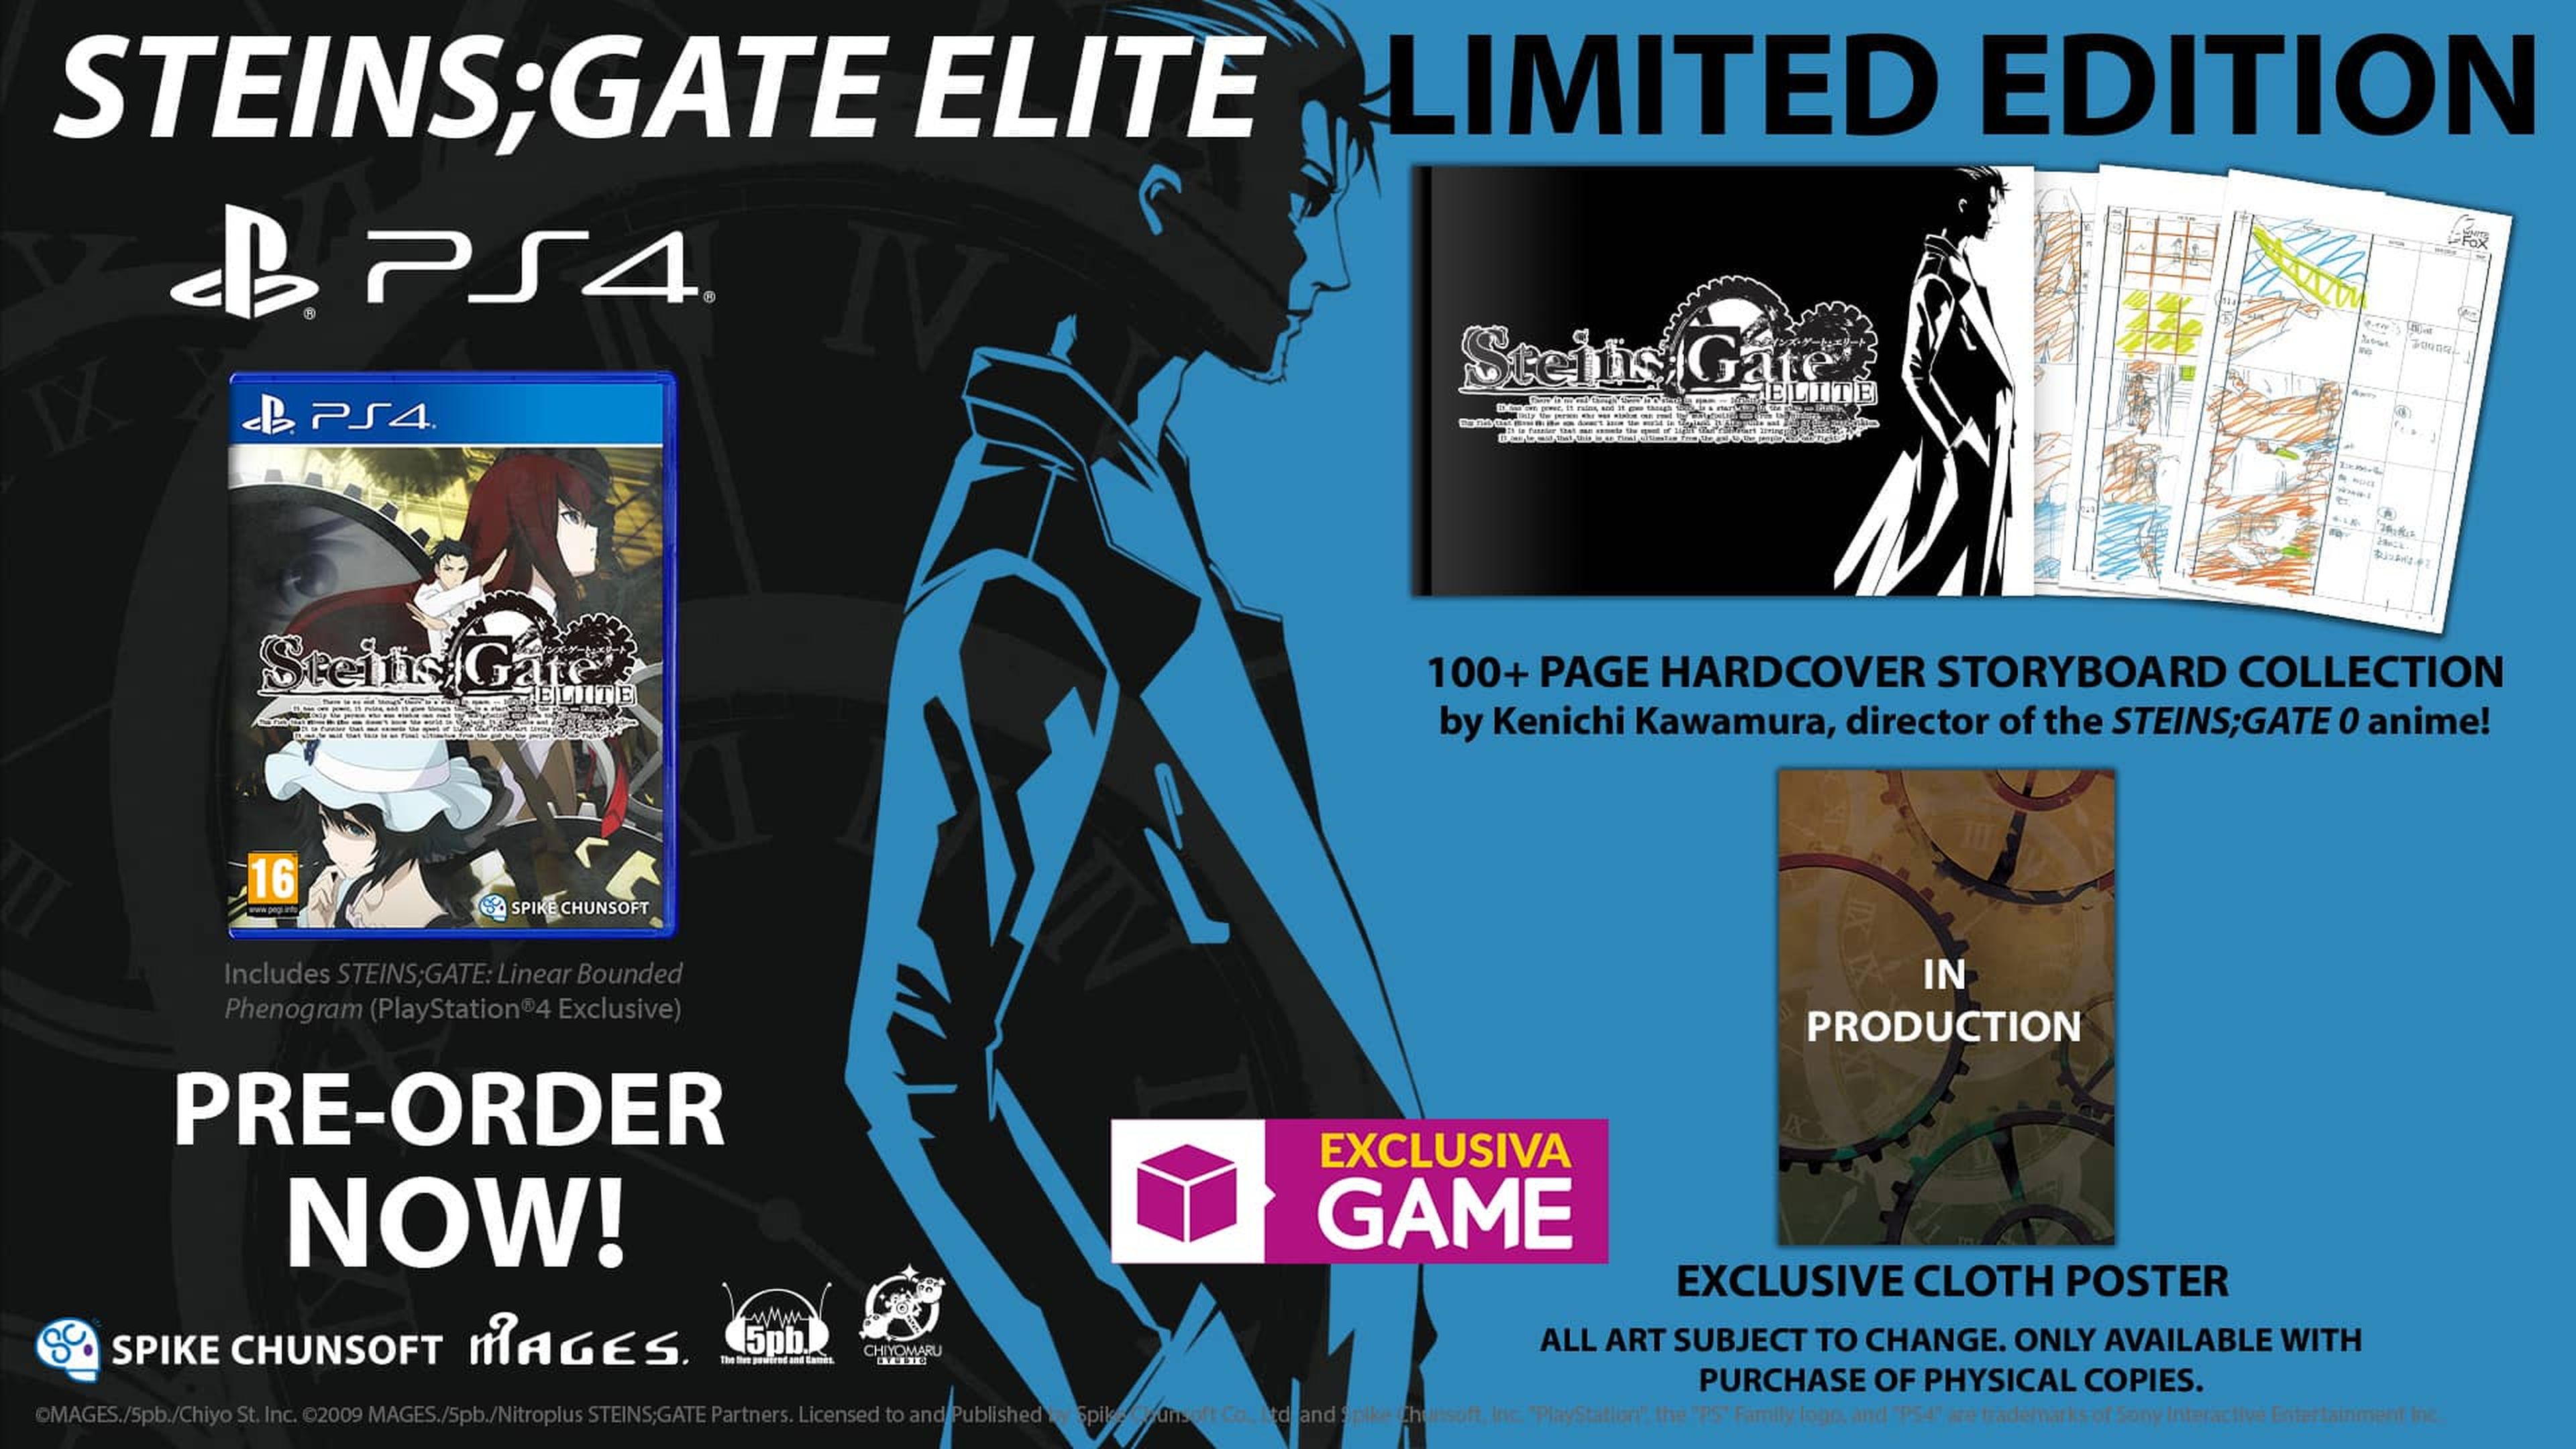 Steins;Gate Elite Limited Edition